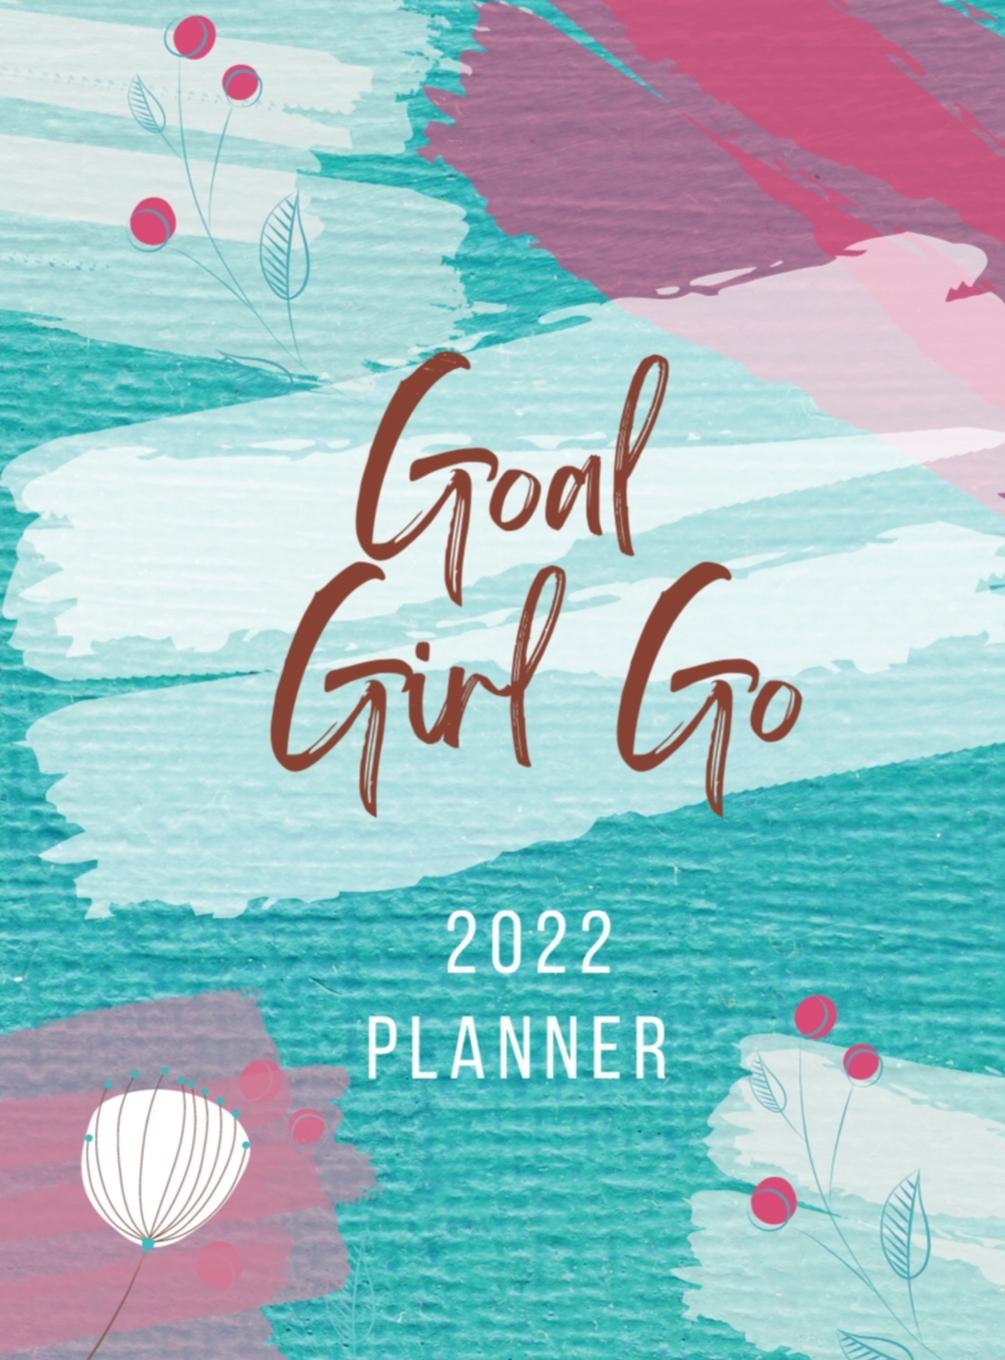 Knjiga Goal Girl Go 2022 Planner 